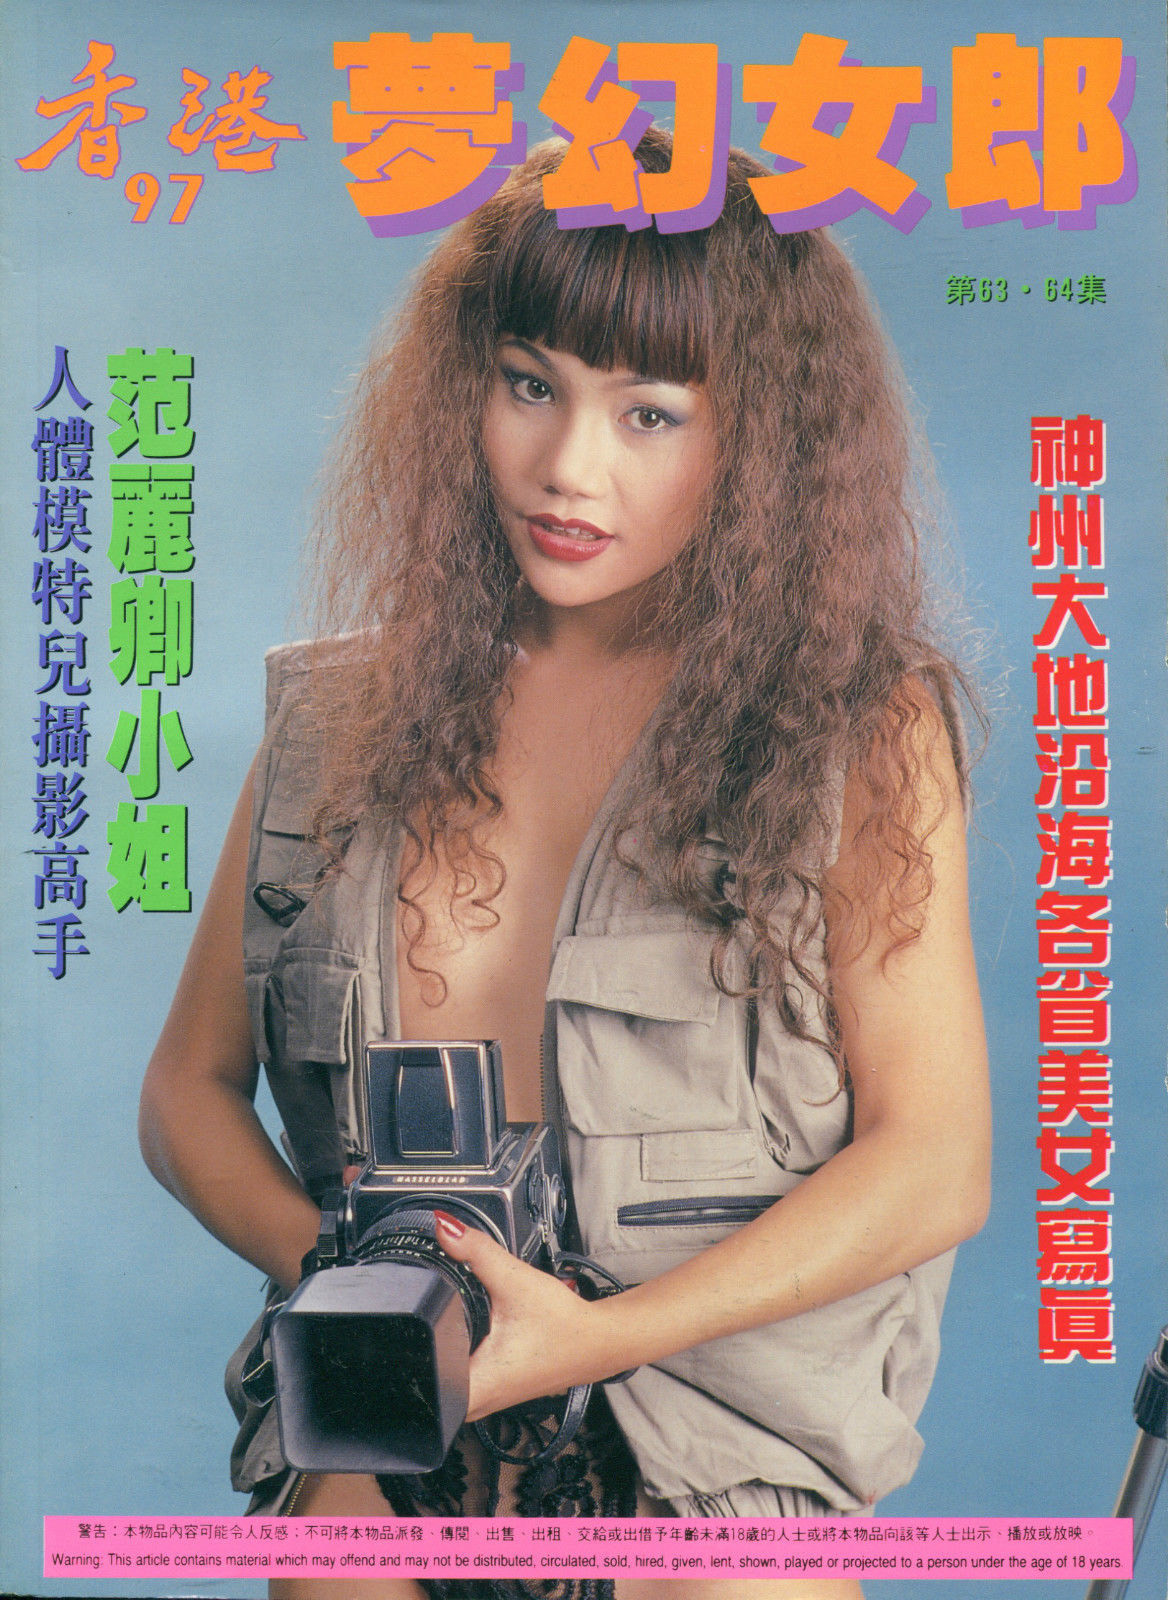 Hong Kong 97 # 64 magazine back issue Hong Kong 97 Chinese magizine back copy 